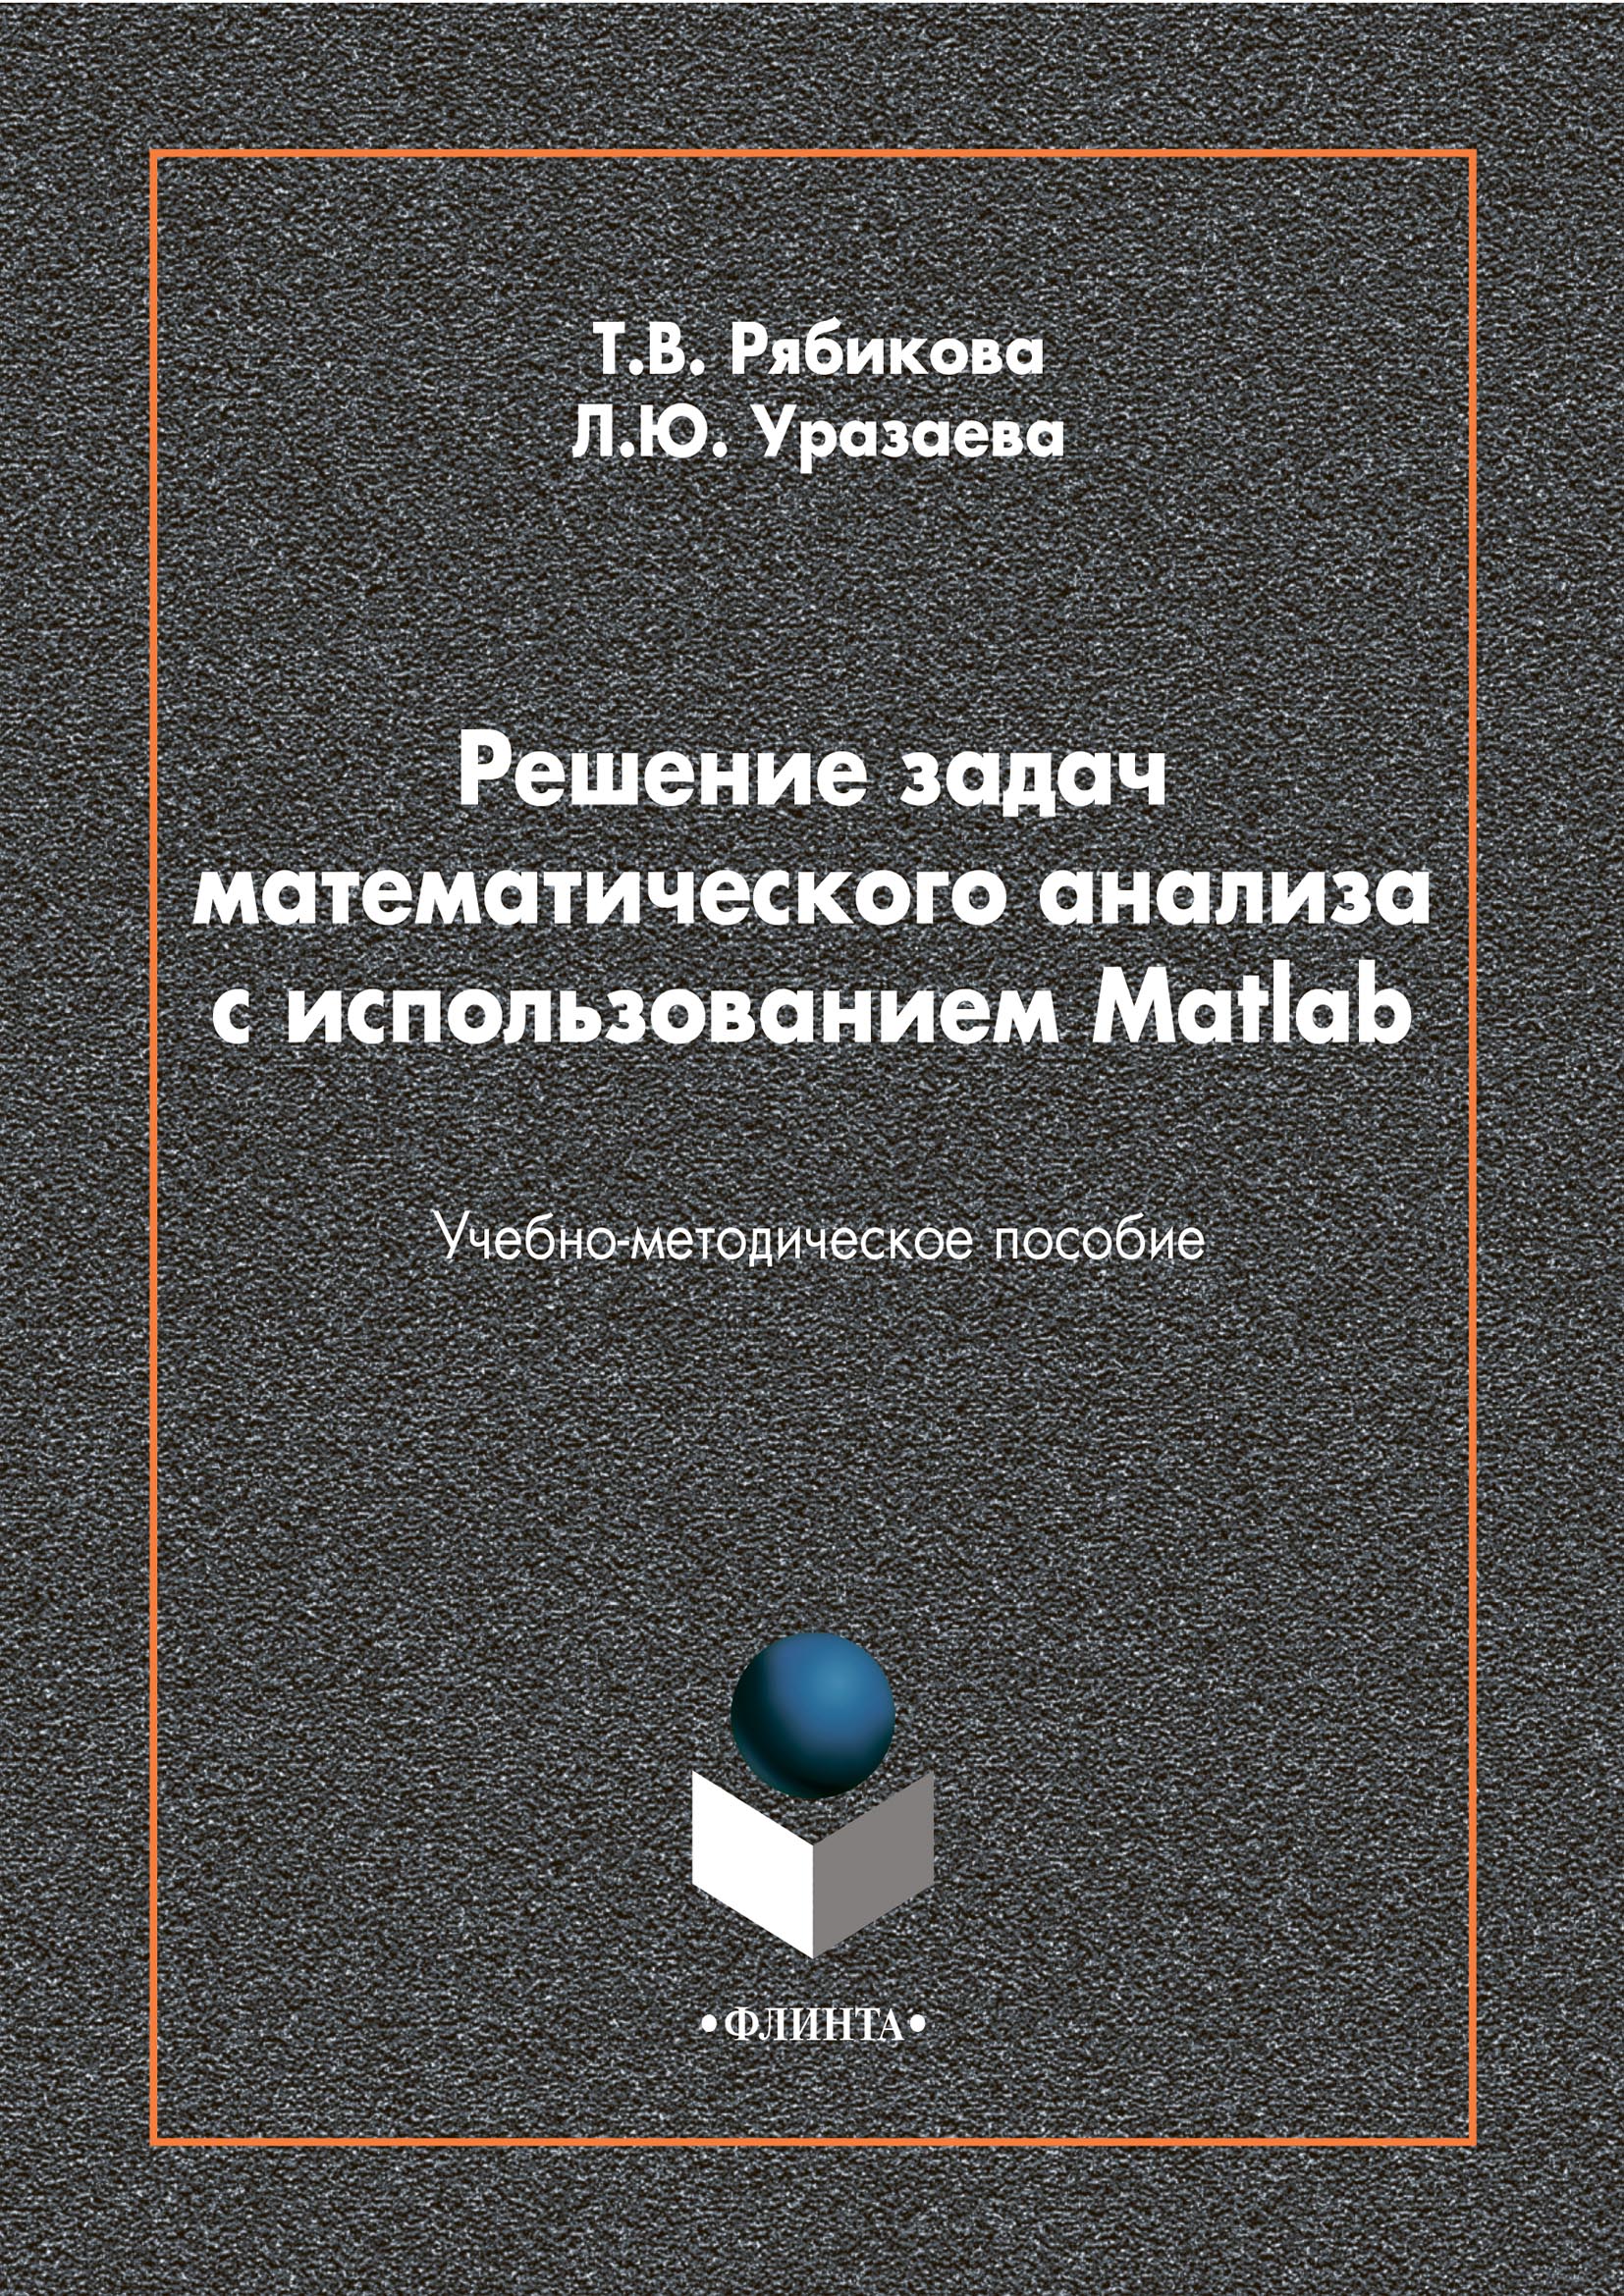 Книга  Решение задач математического анализа с использованием Matlab созданная Лилия Уразаева, Татьяна Рябикова может относится к жанру математика, программирование, программы, учебно-методические пособия. Стоимость электронной книги Решение задач математического анализа с использованием Matlab с идентификатором 65496686 составляет 115.00 руб.